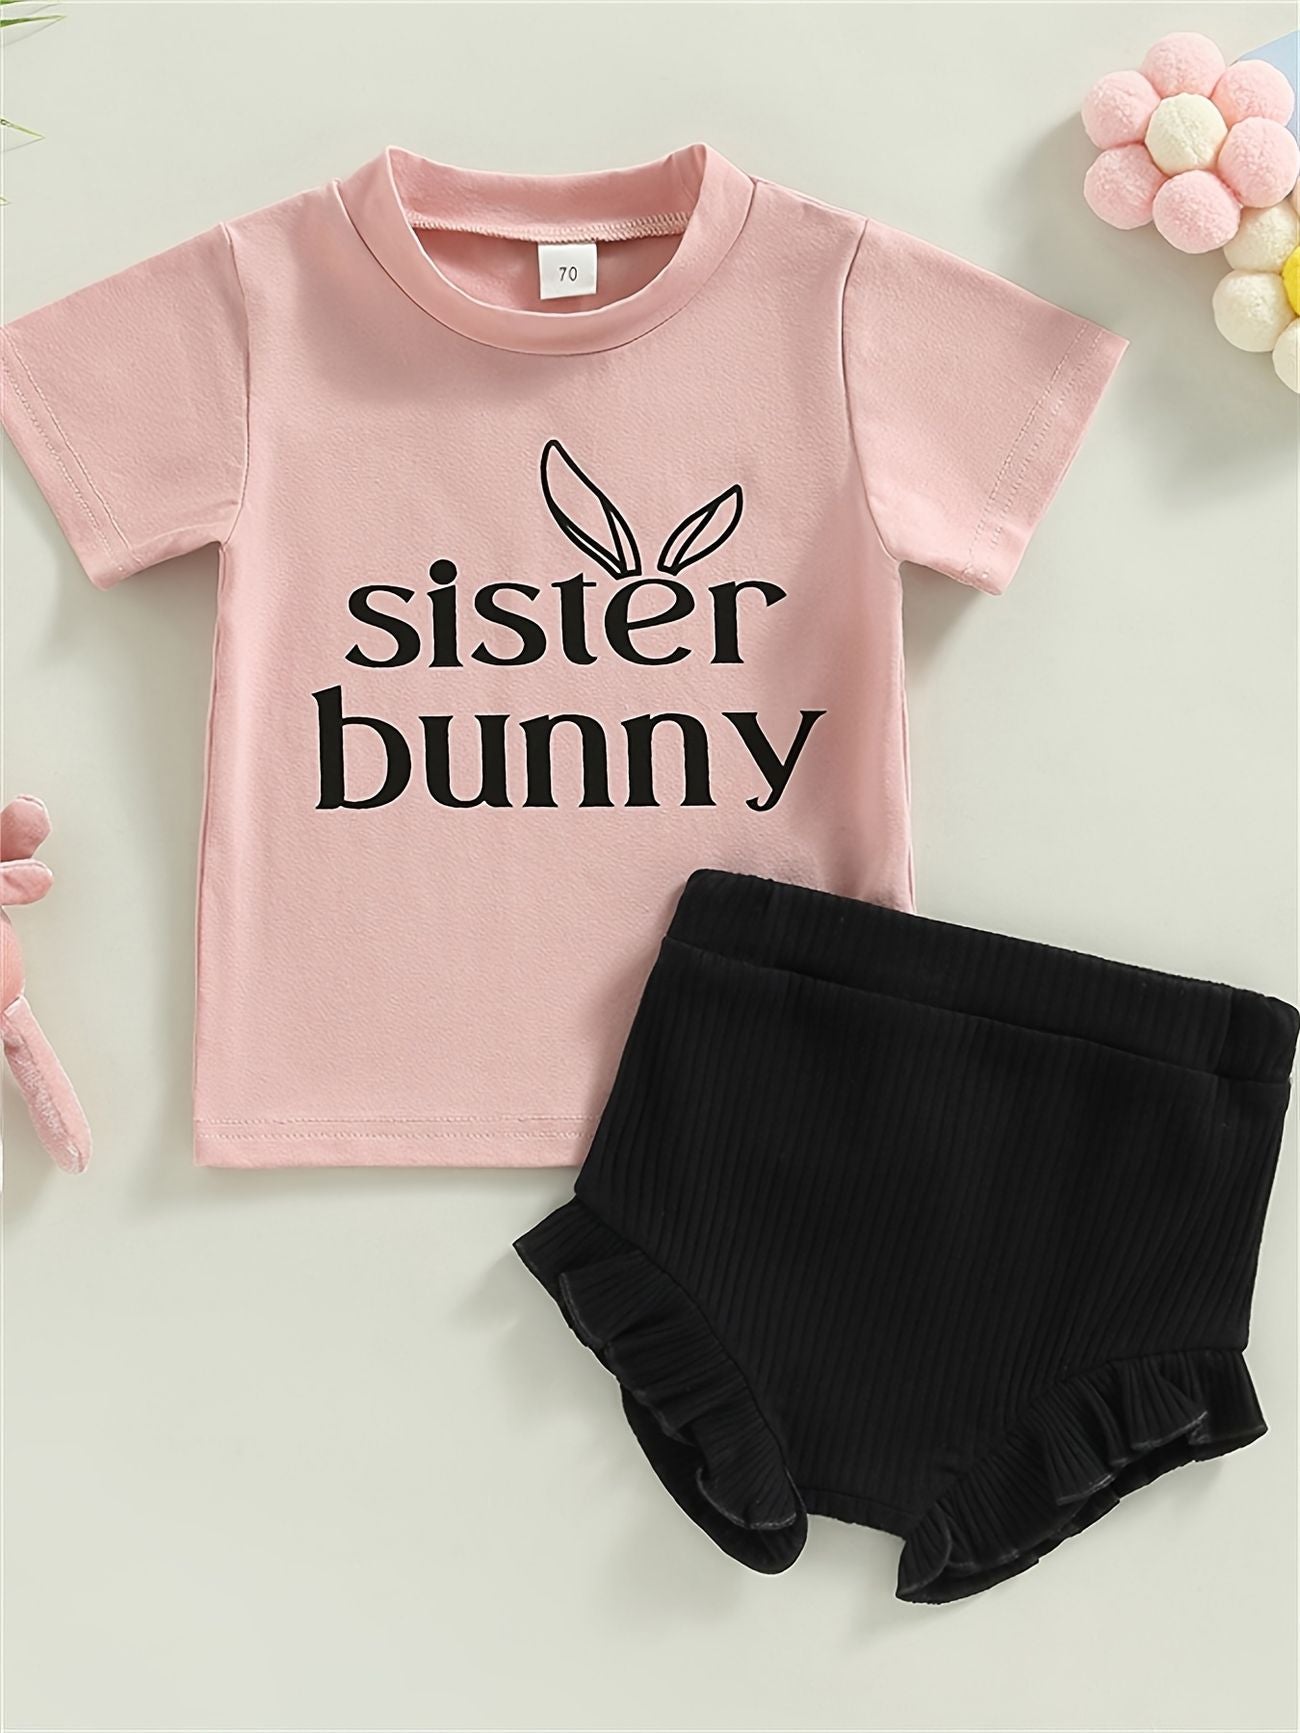 Sister Bunny